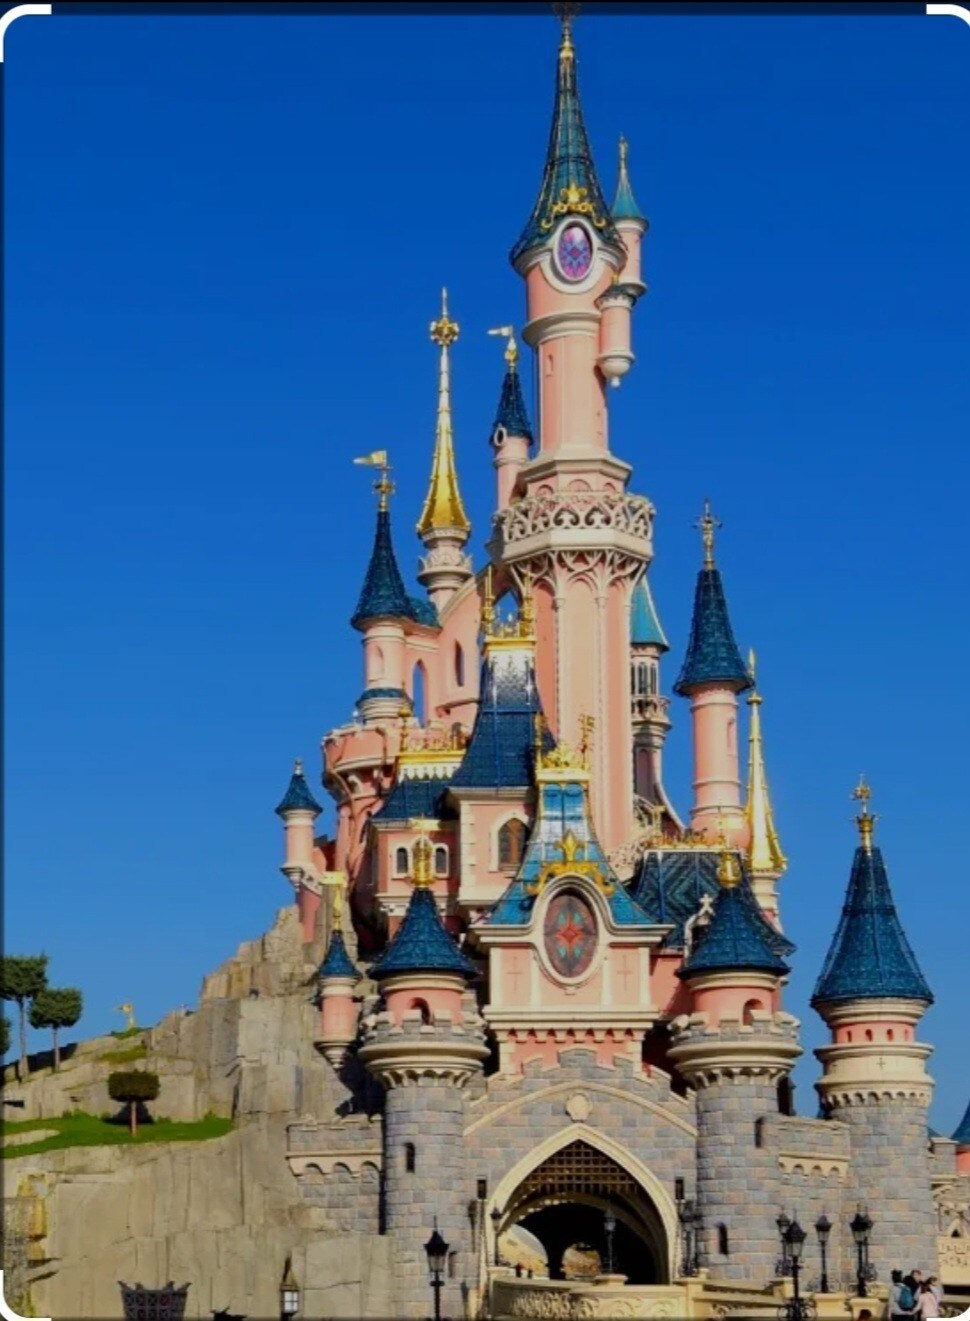 Logement proche de Disneyland Paris, JO 2024.